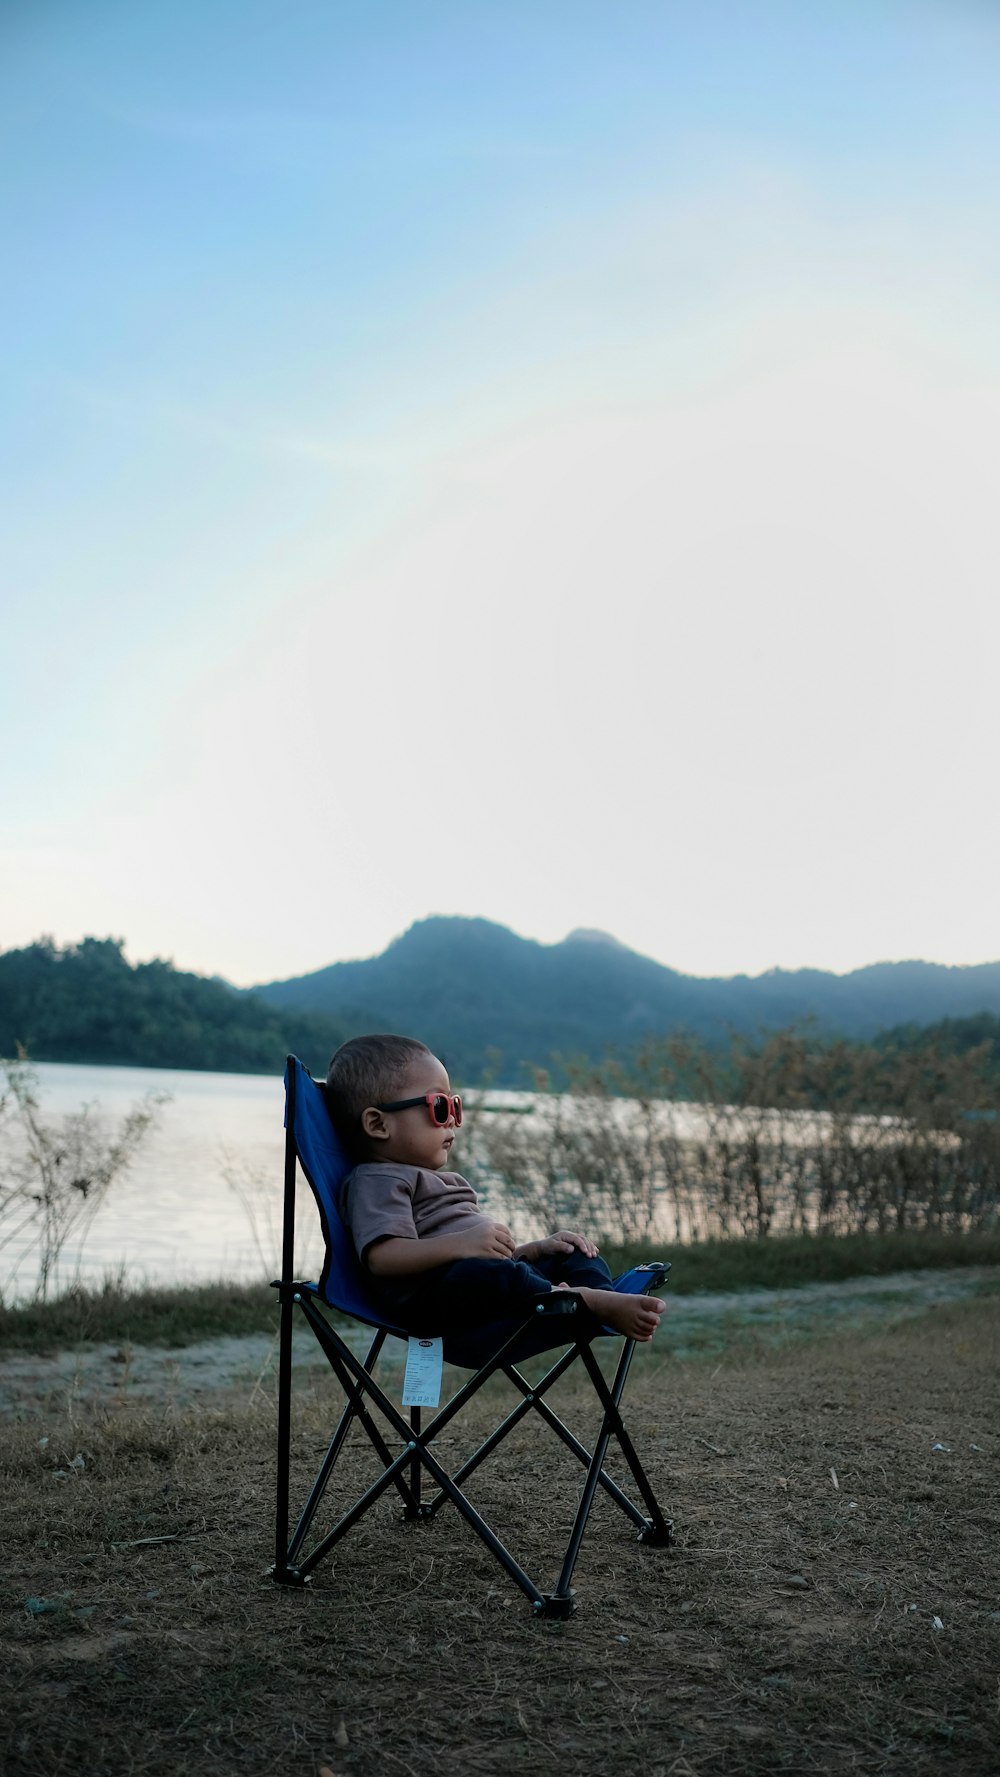 검은 색과 파란색 캠핑 의자에 앉아있는 유아